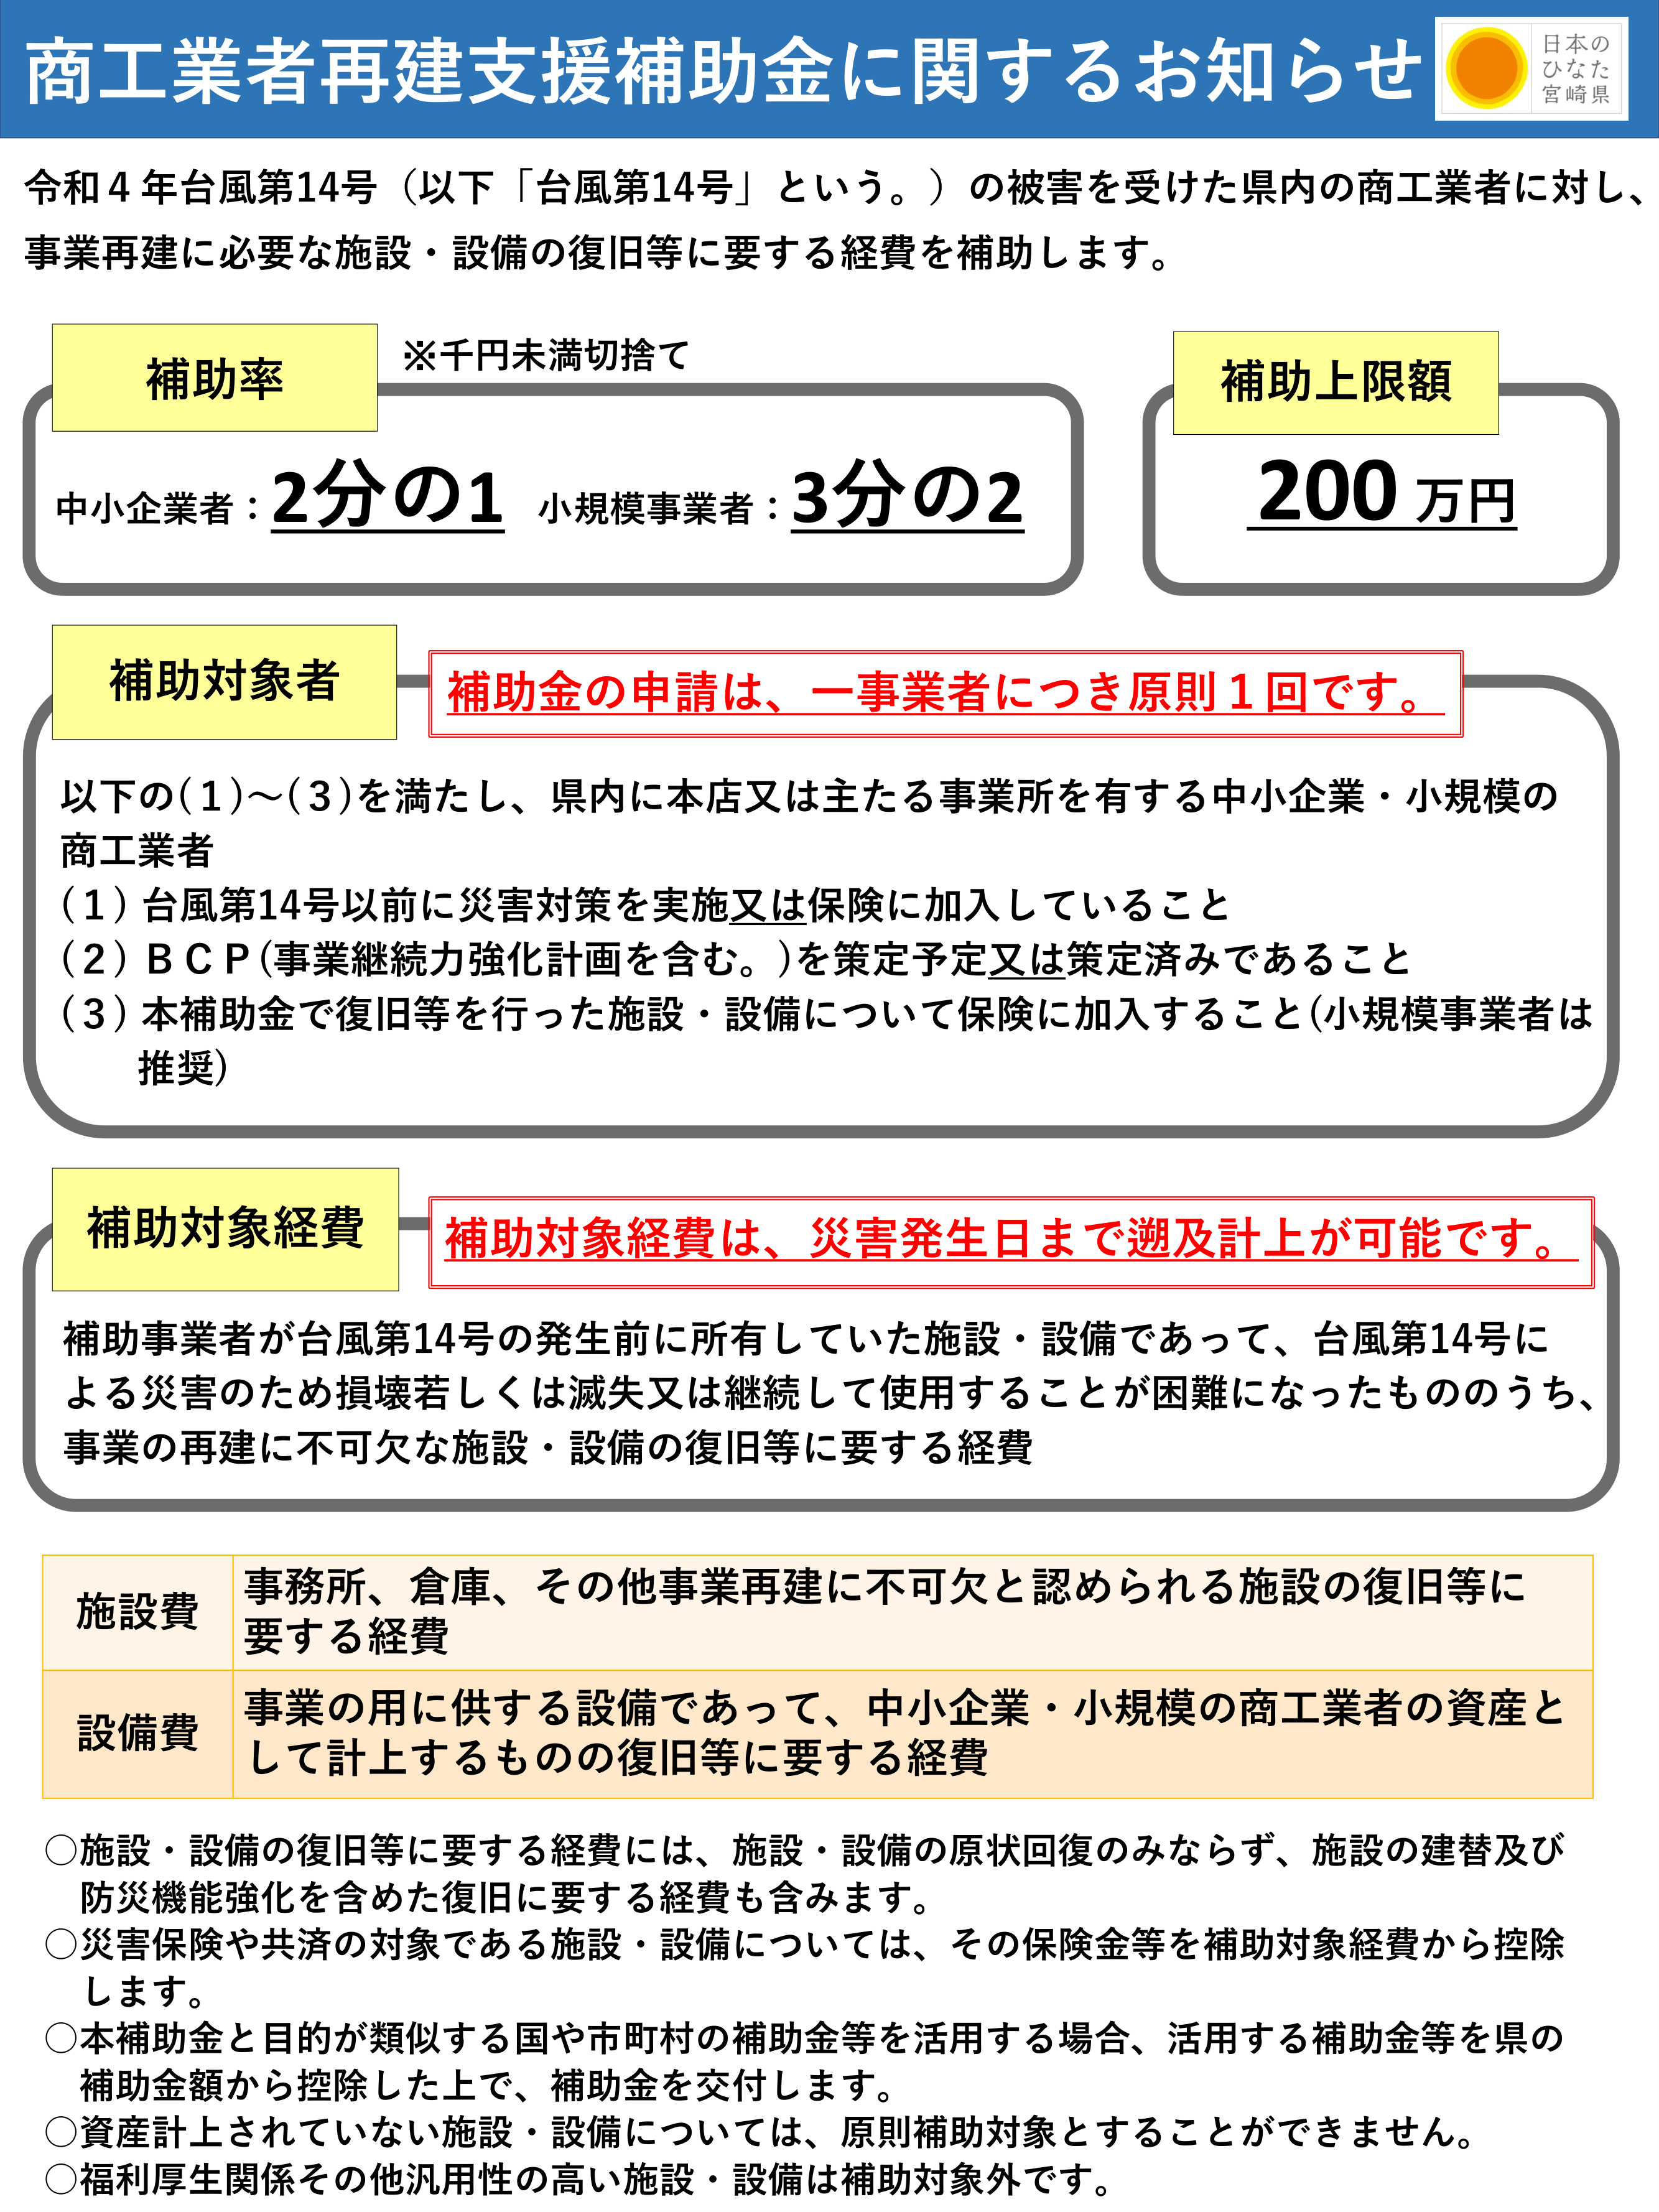 【補助金情報】宮崎県商工業者再建支援補助金について